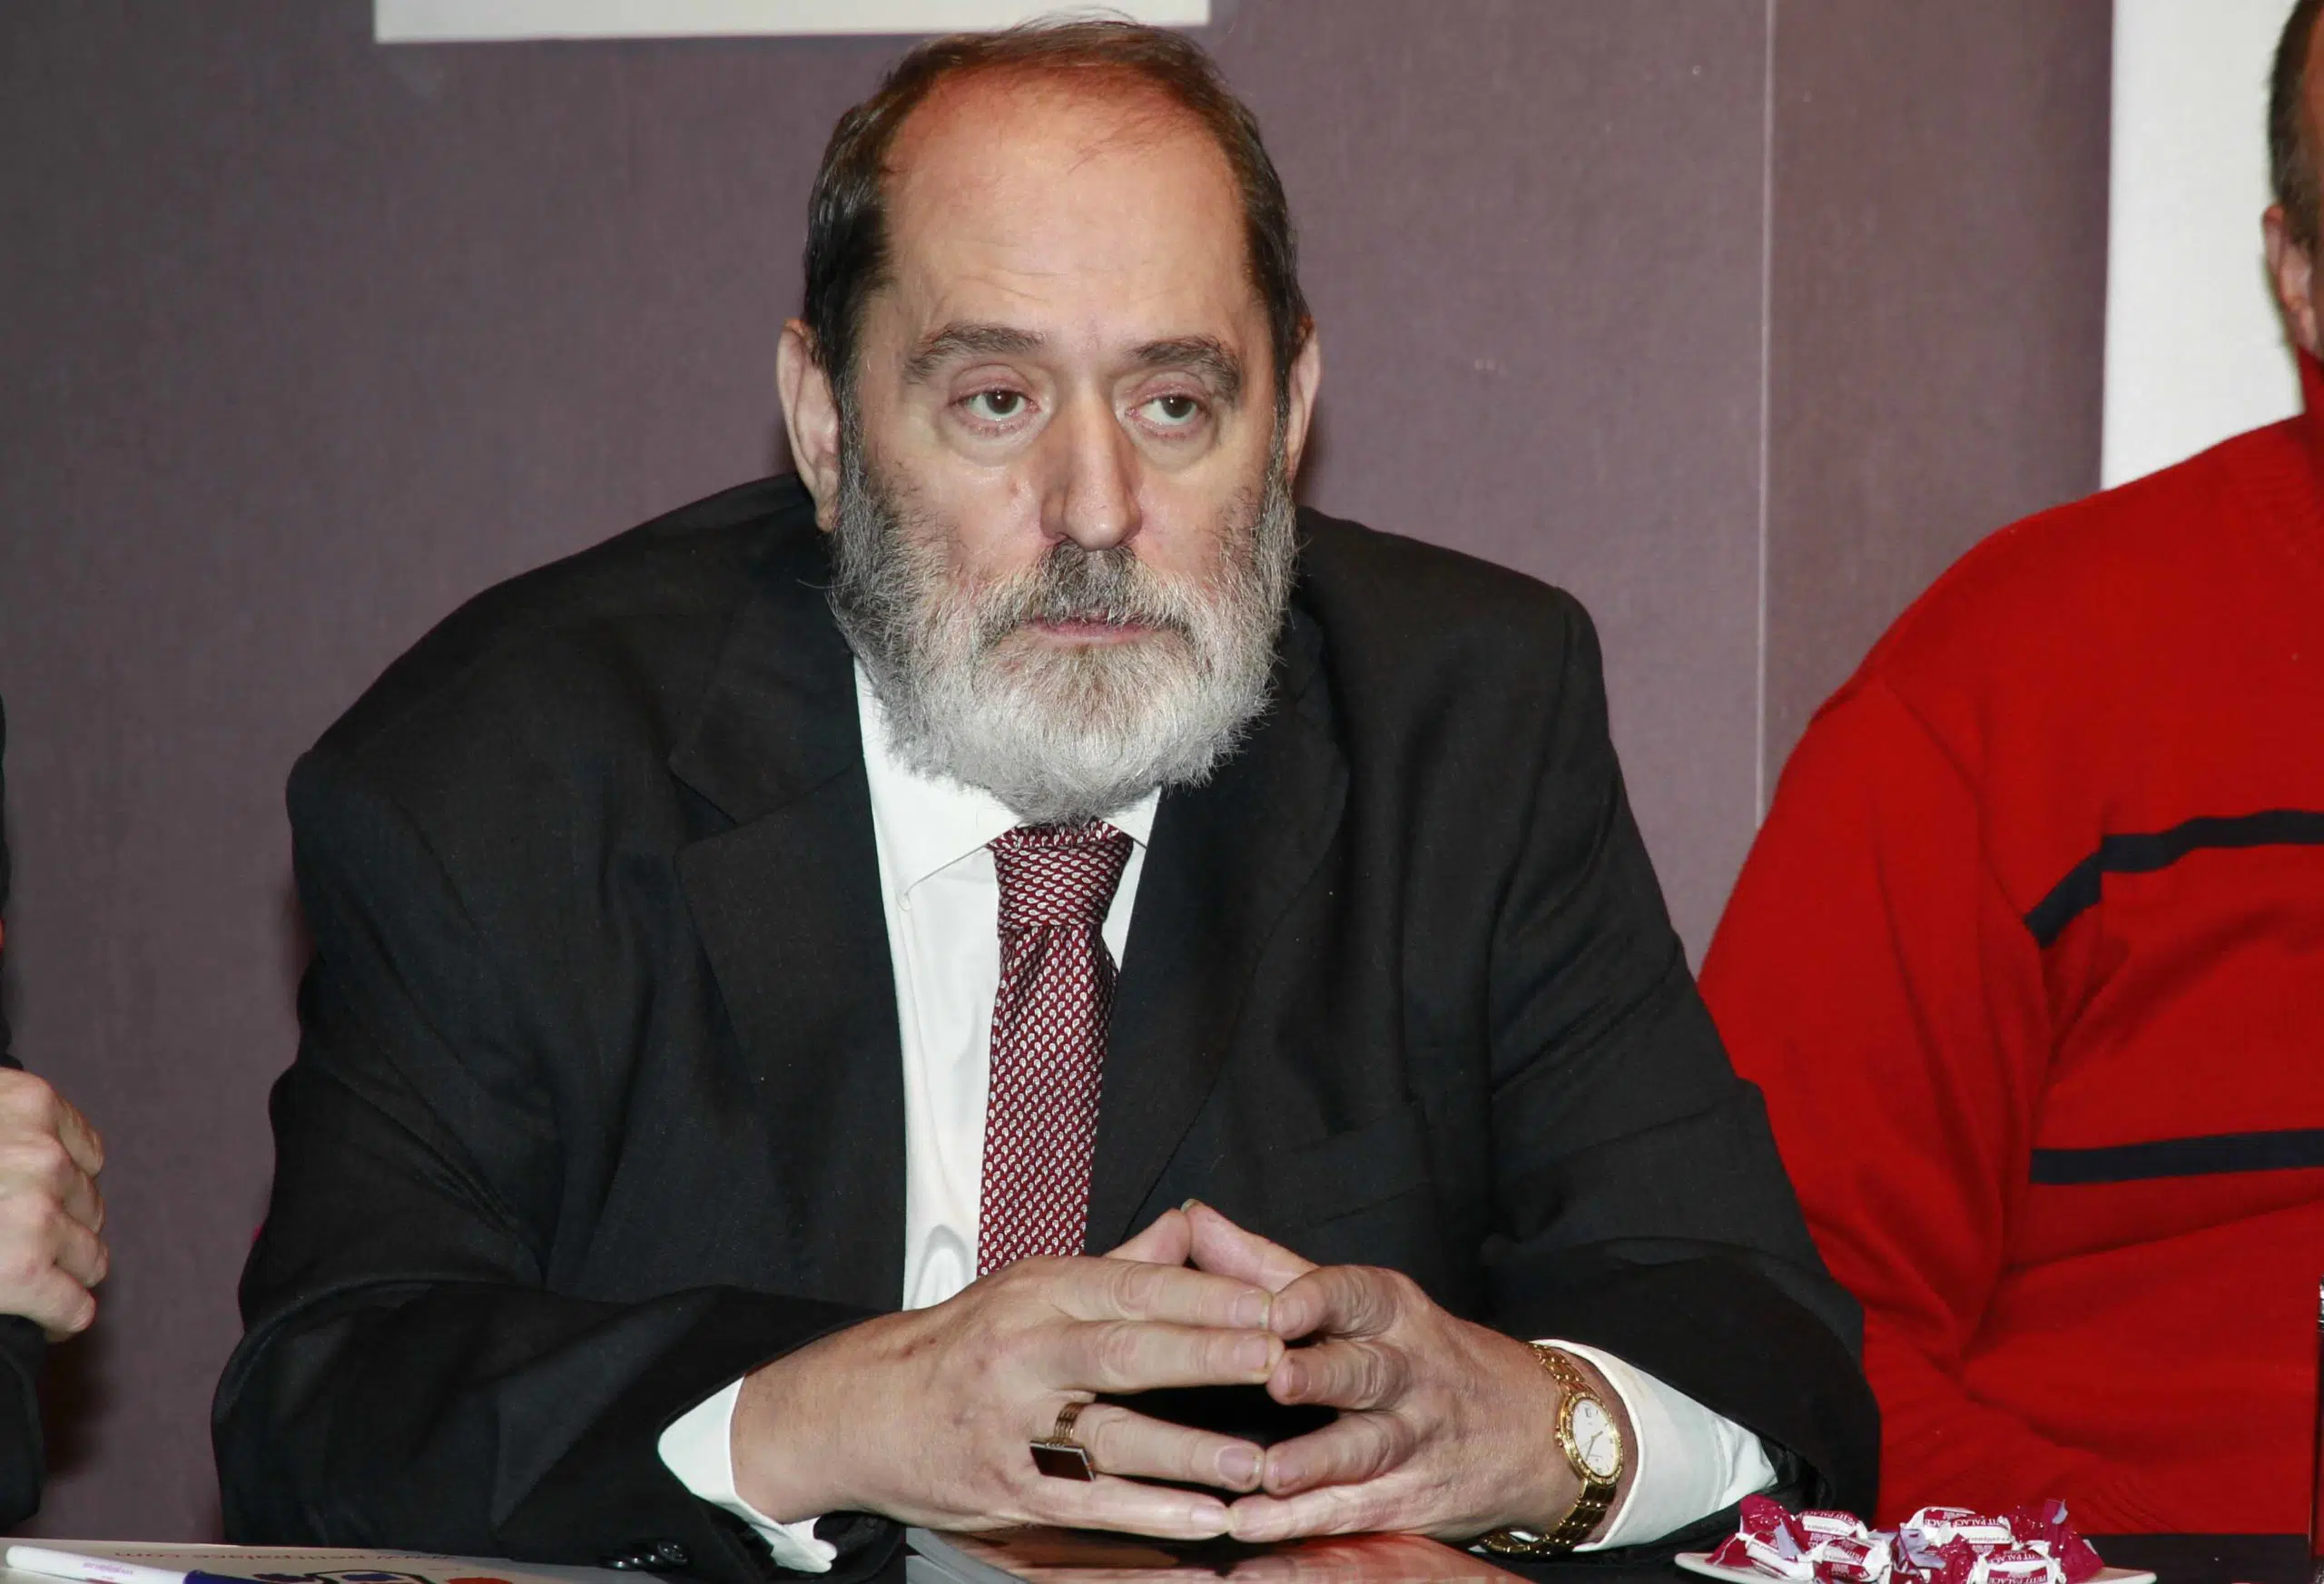 El Ministerio Fiscal solicita 4 años de cárcel para Emilio Rodríguez Menéndez por un supuesto delito de estafa